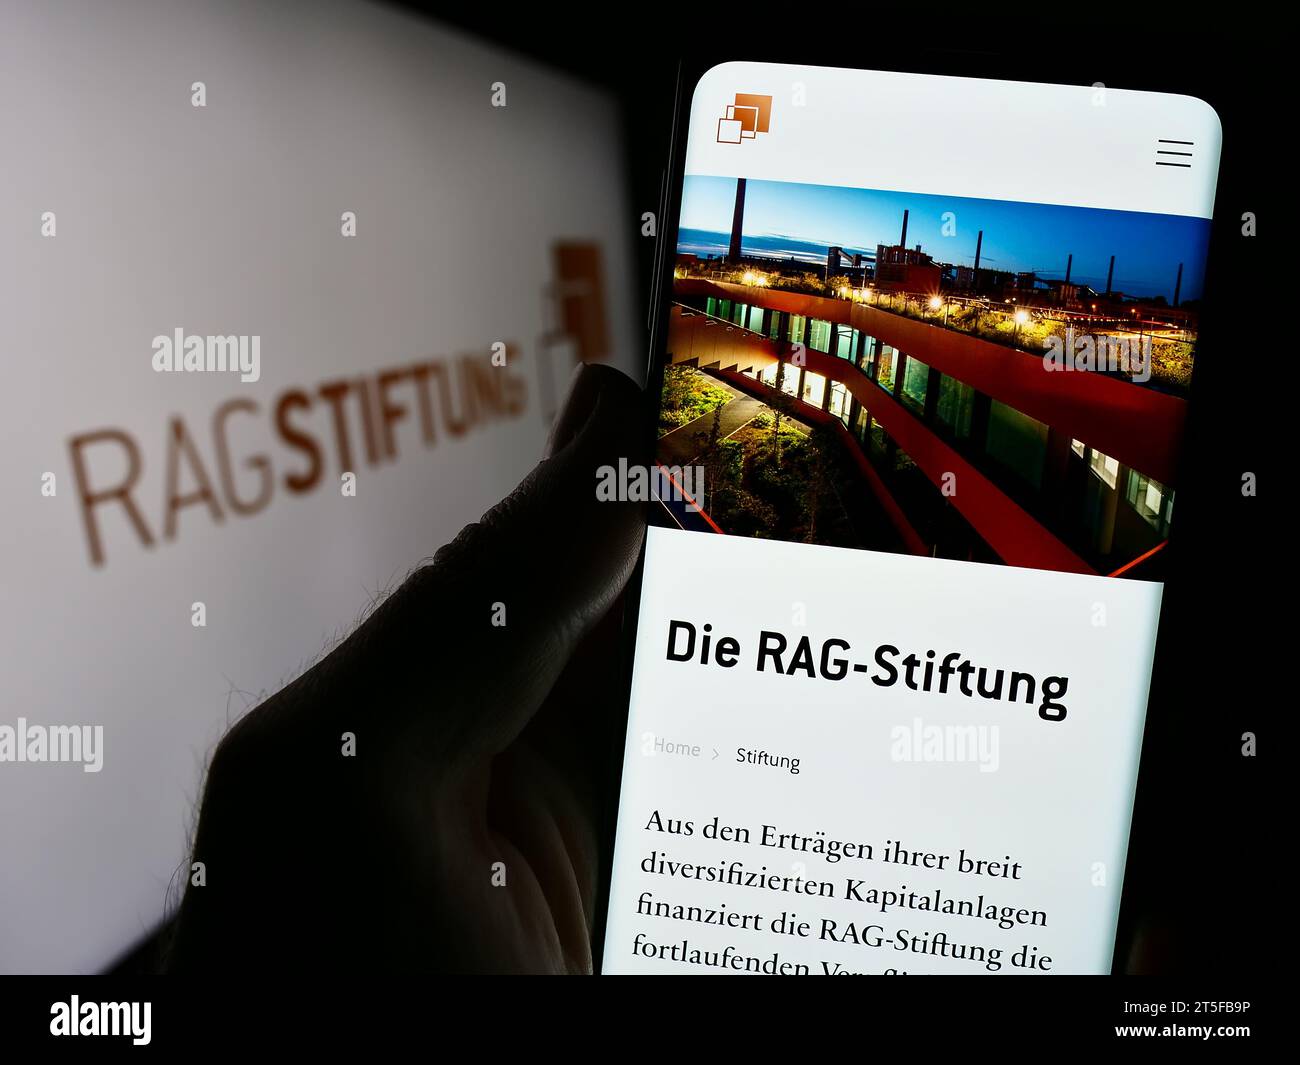 Persona in possesso di cellulare con sito web della fondazione tedesca RAG-Stiftung davanti al logo. Concentrarsi sul centro del display del telefono. Foto Stock